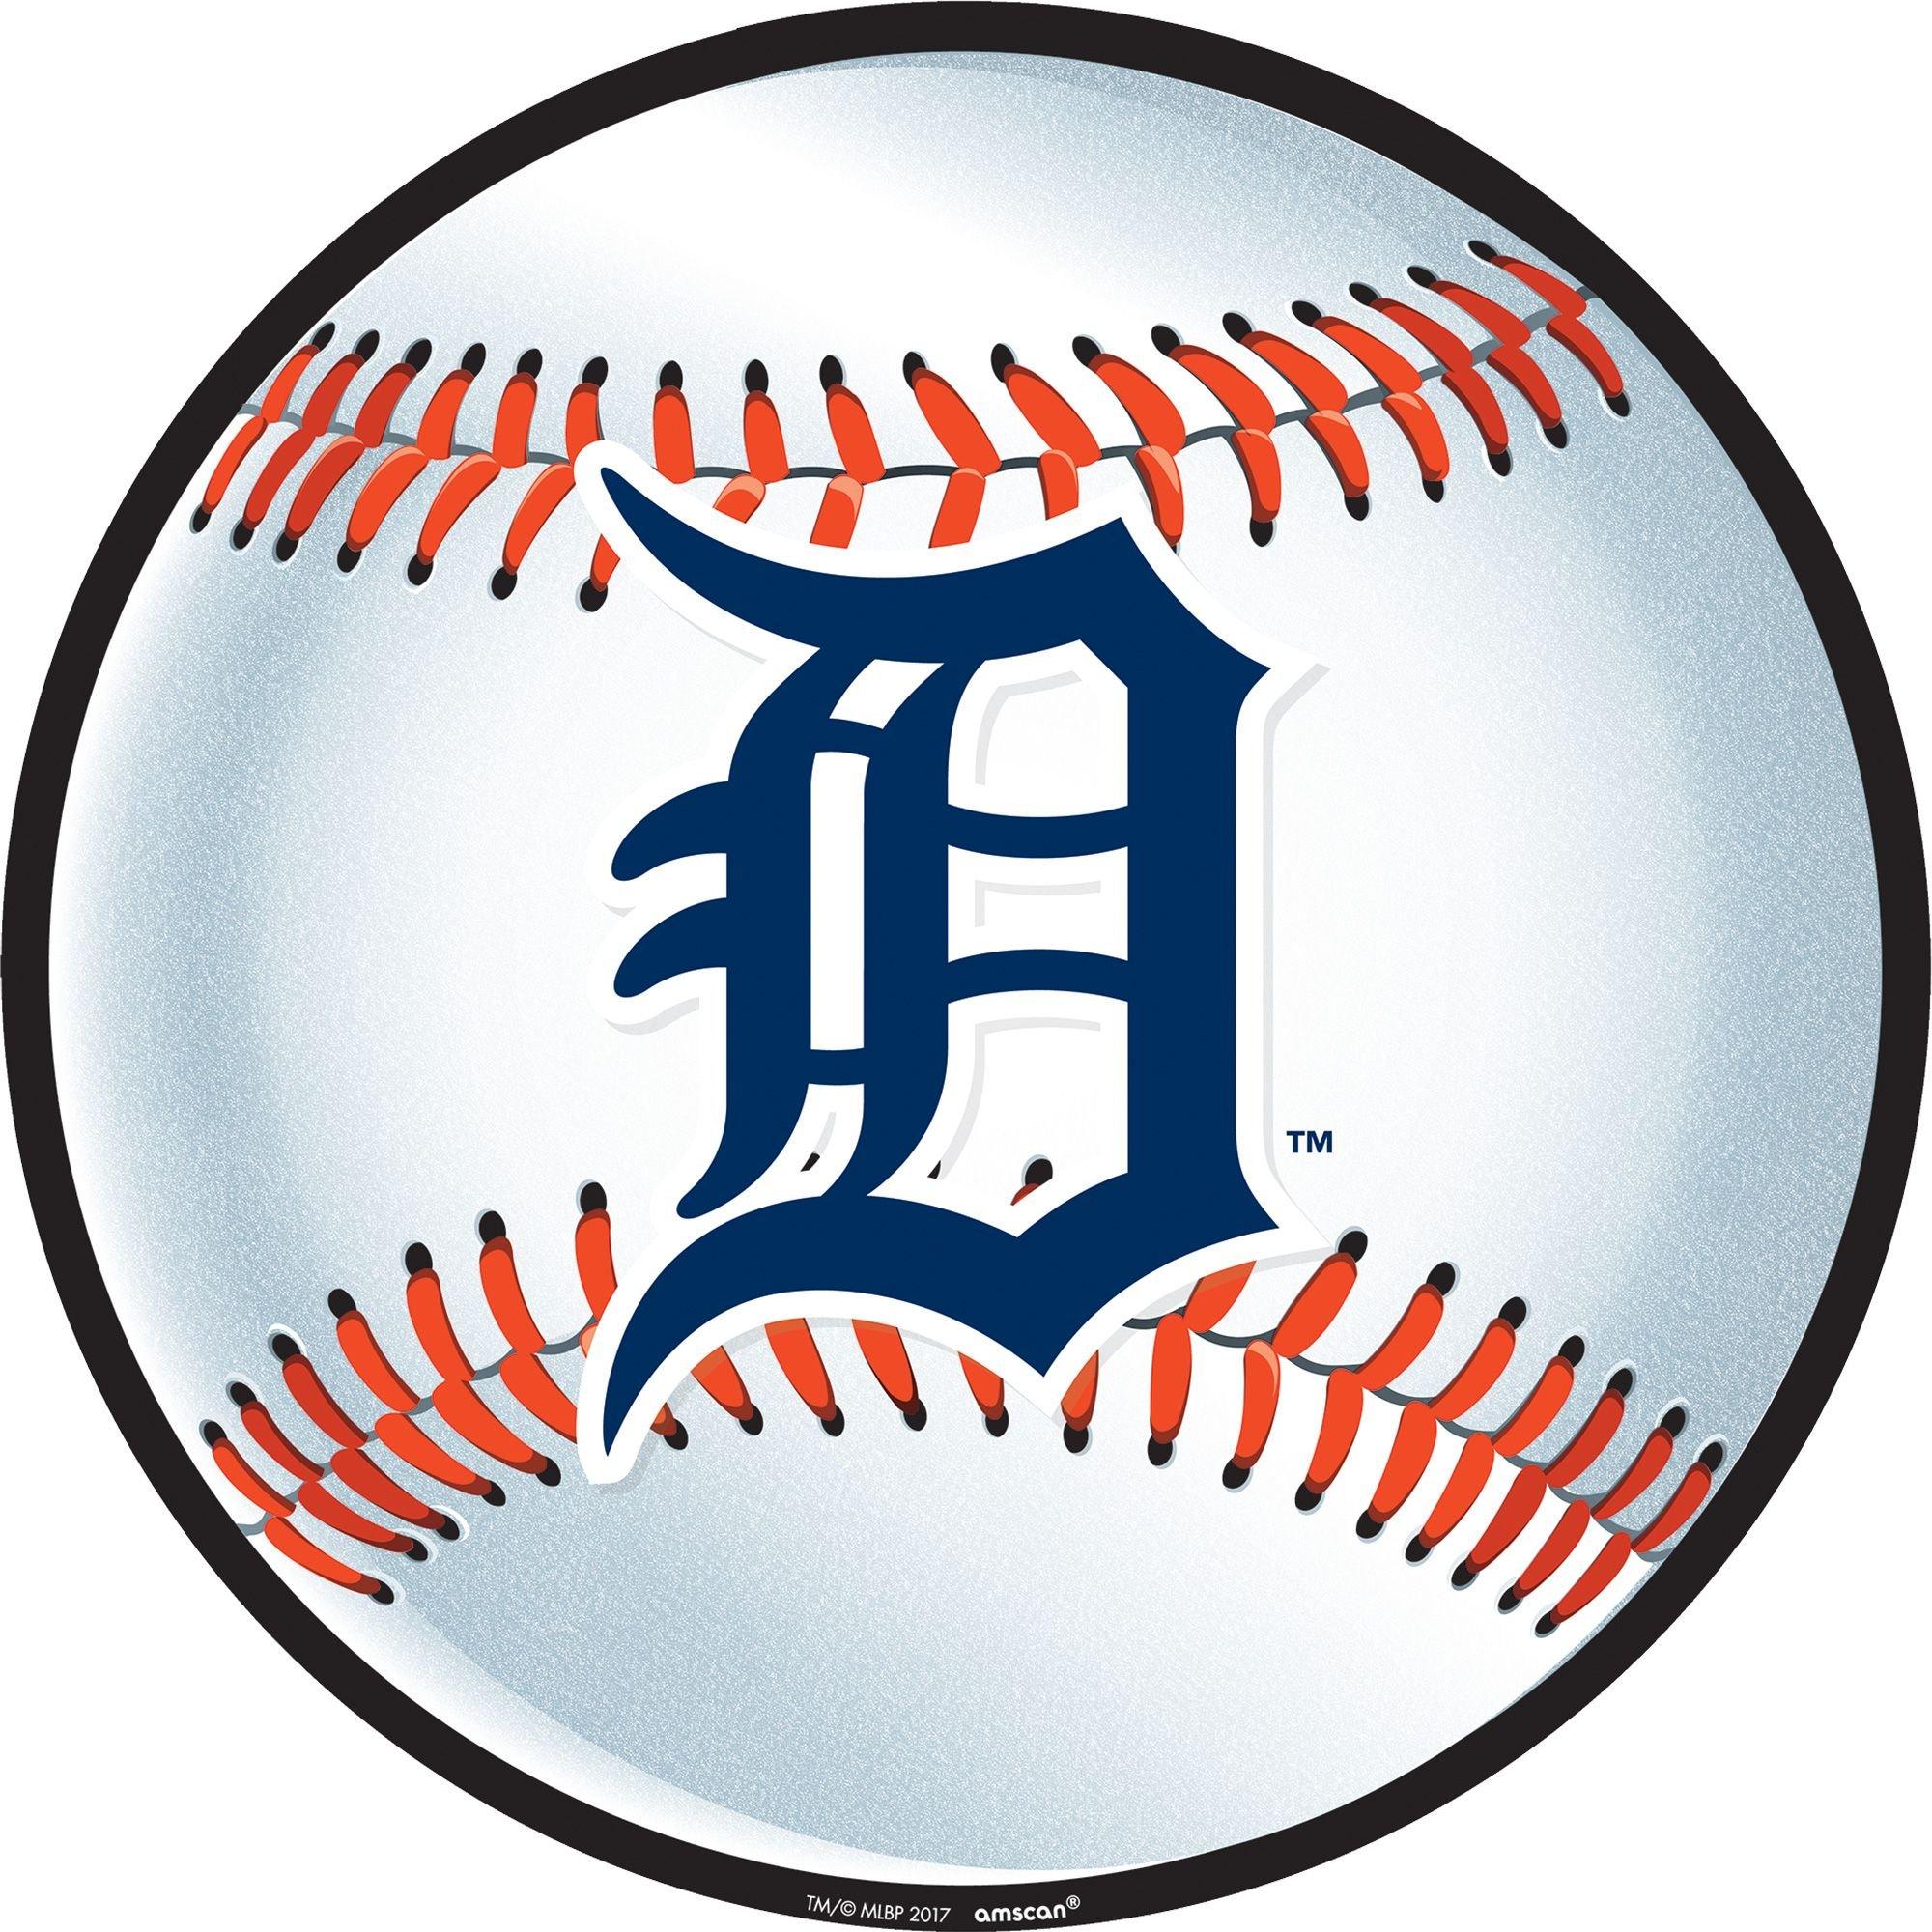 Fan Favorite, Accessories, Nwt Detroit Tigers Baseball Cap Hat Fan  Favorite